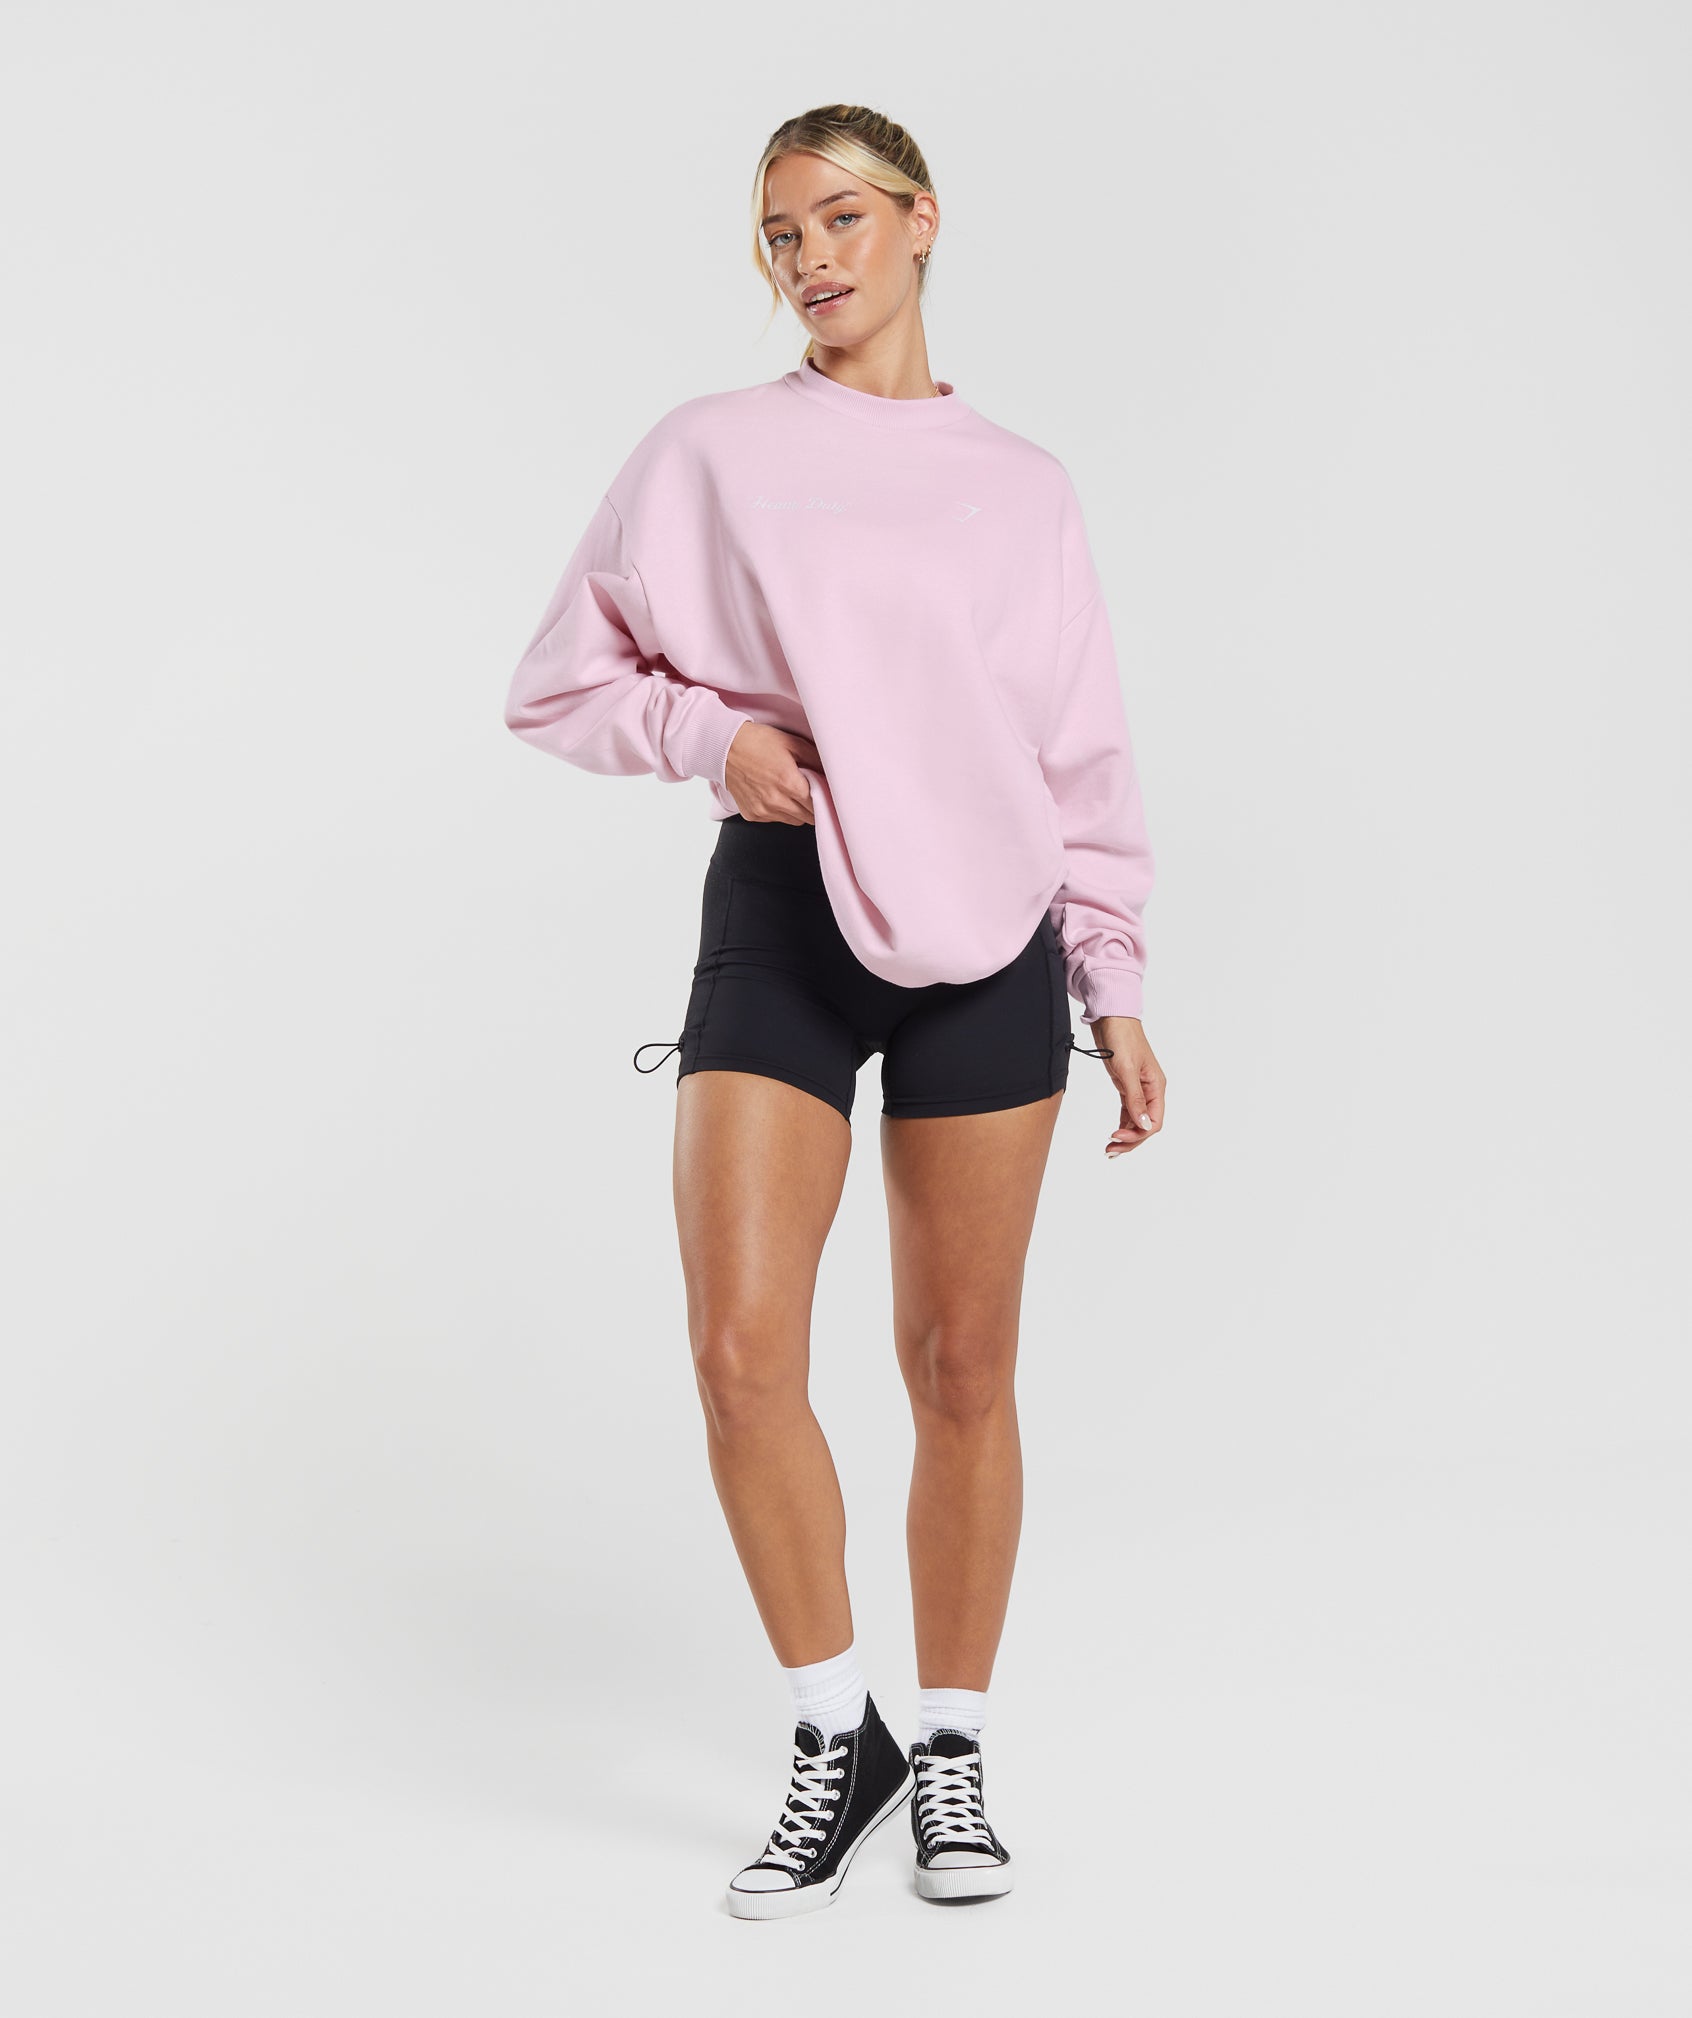 Heavy Duty Oversized Sweatshirt in Lemonade Pink - view 4